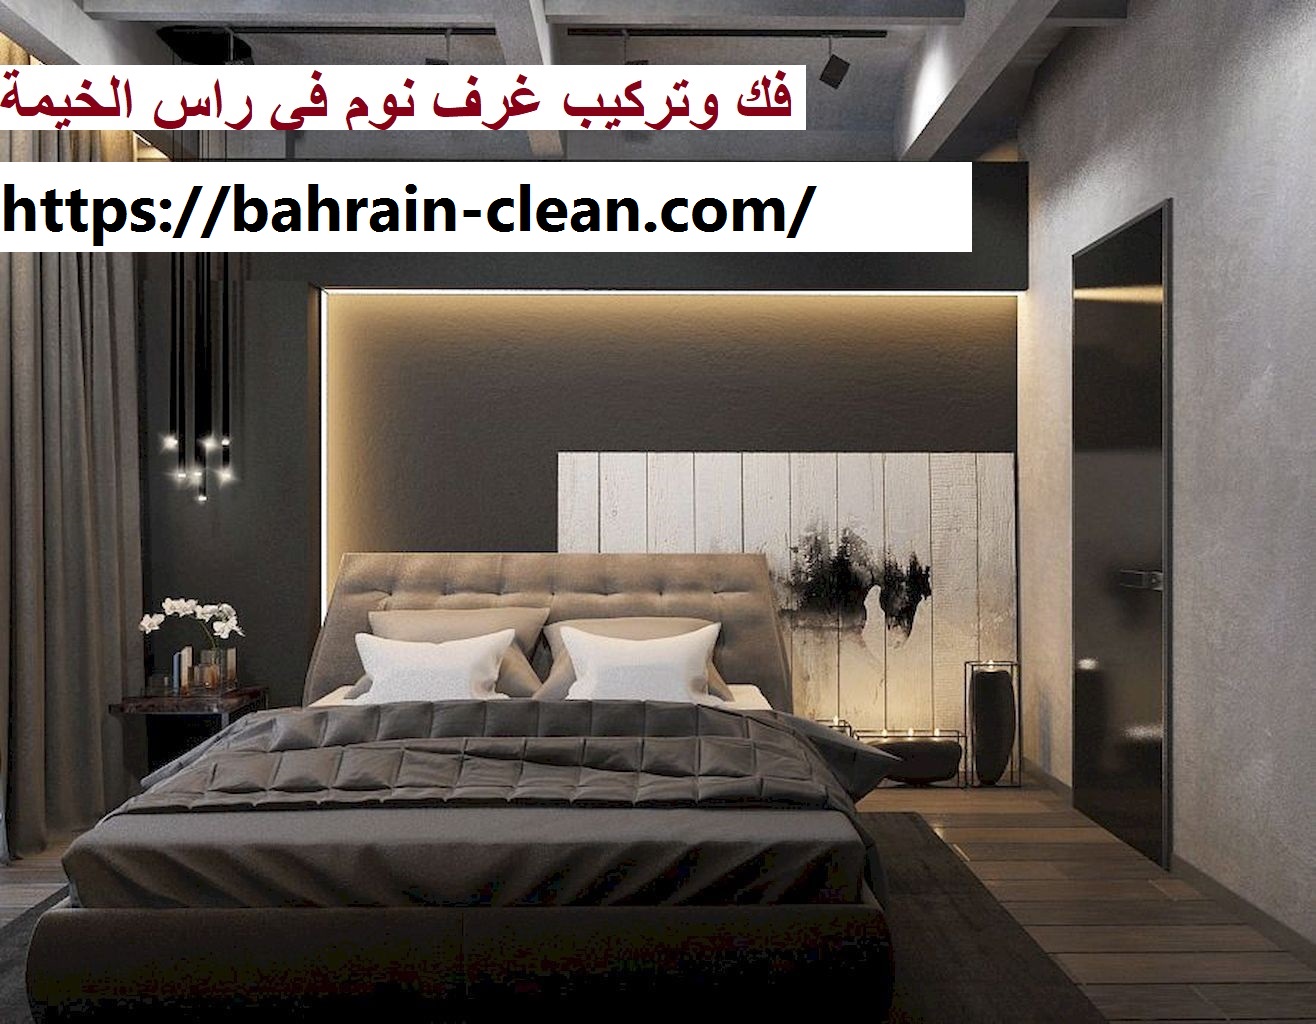 فك وتركيب غرف نوم في راس الخيمة |0522588194